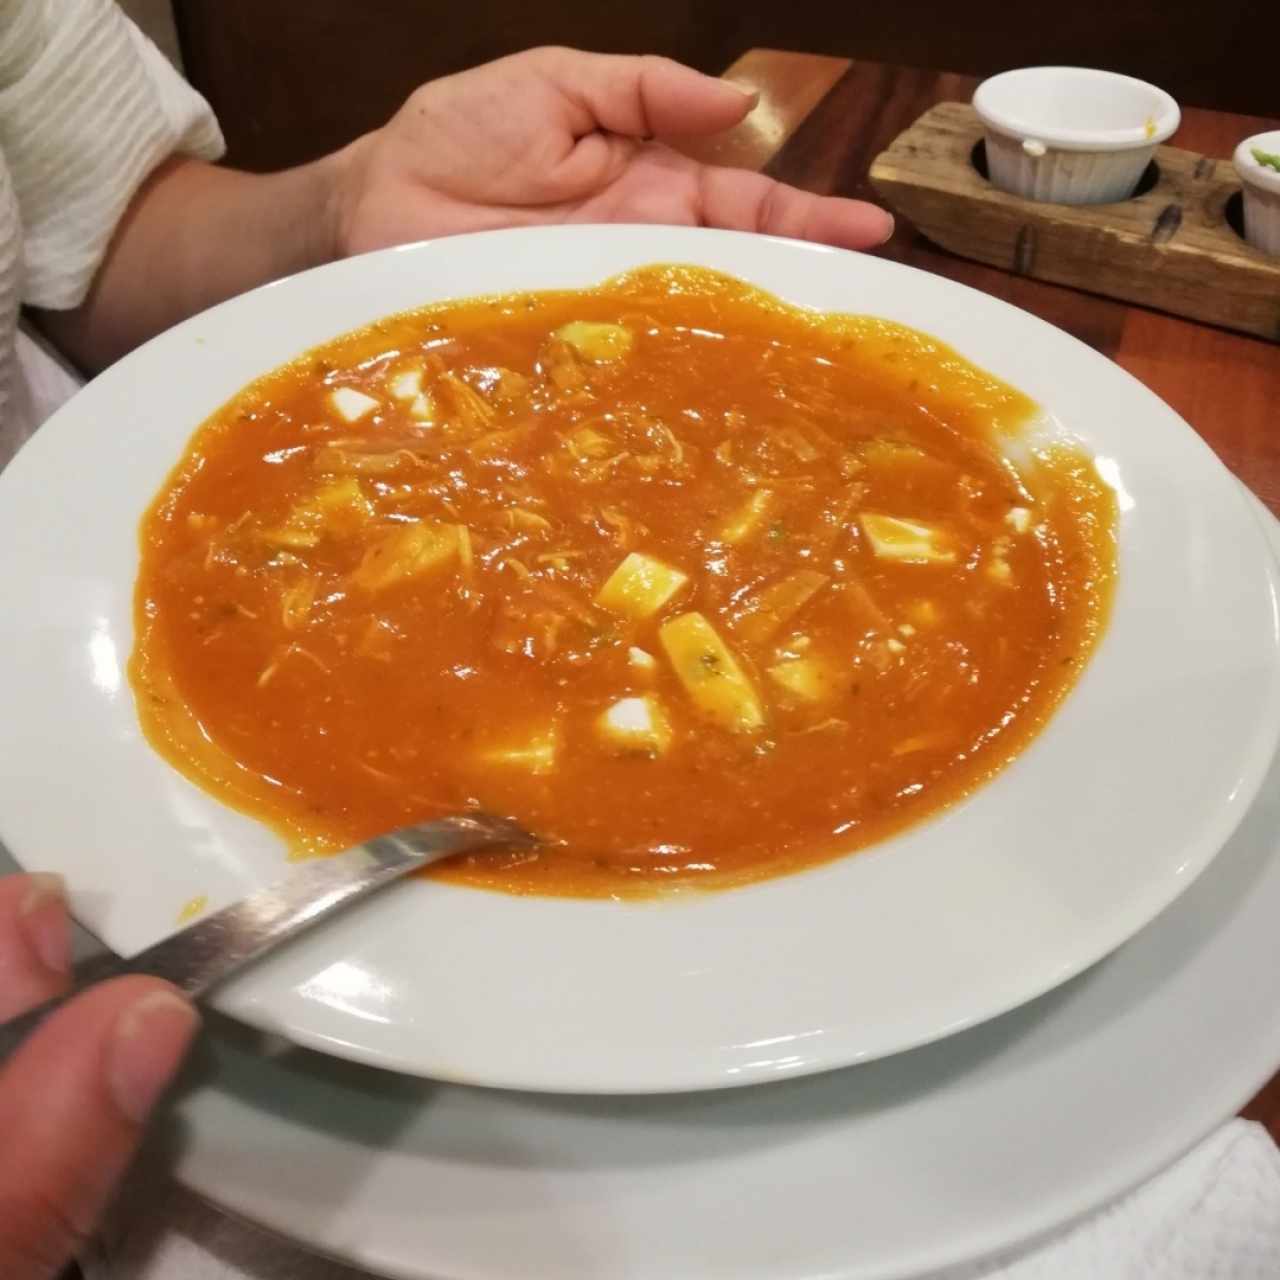 Sopas - Sopa de Tortilla